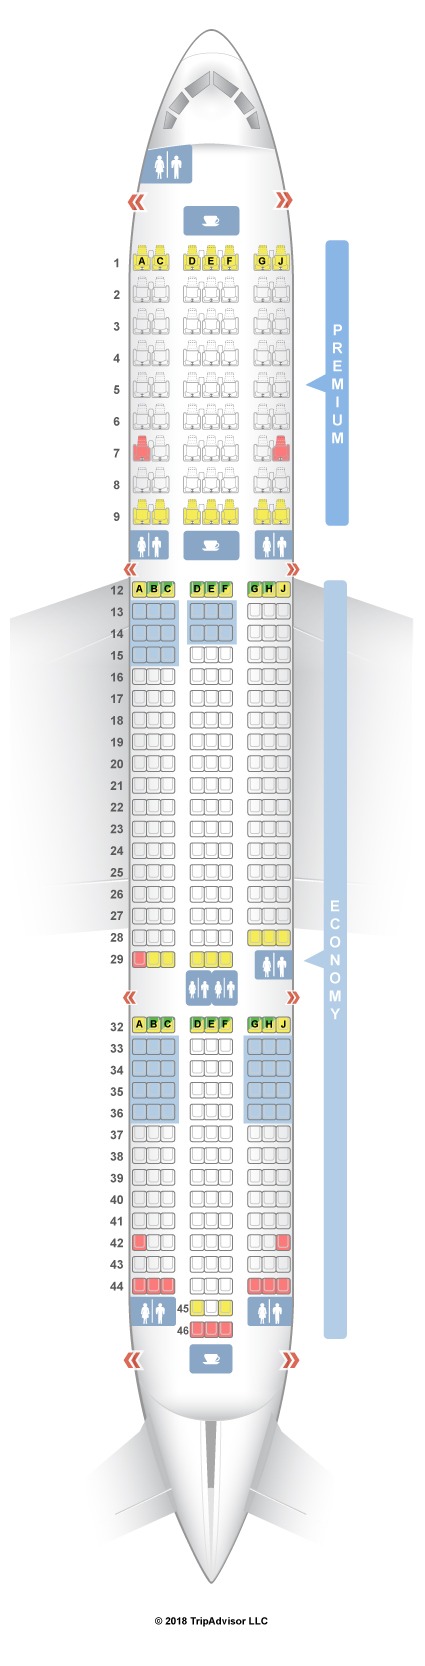 787 Dreamliner Seating Chart